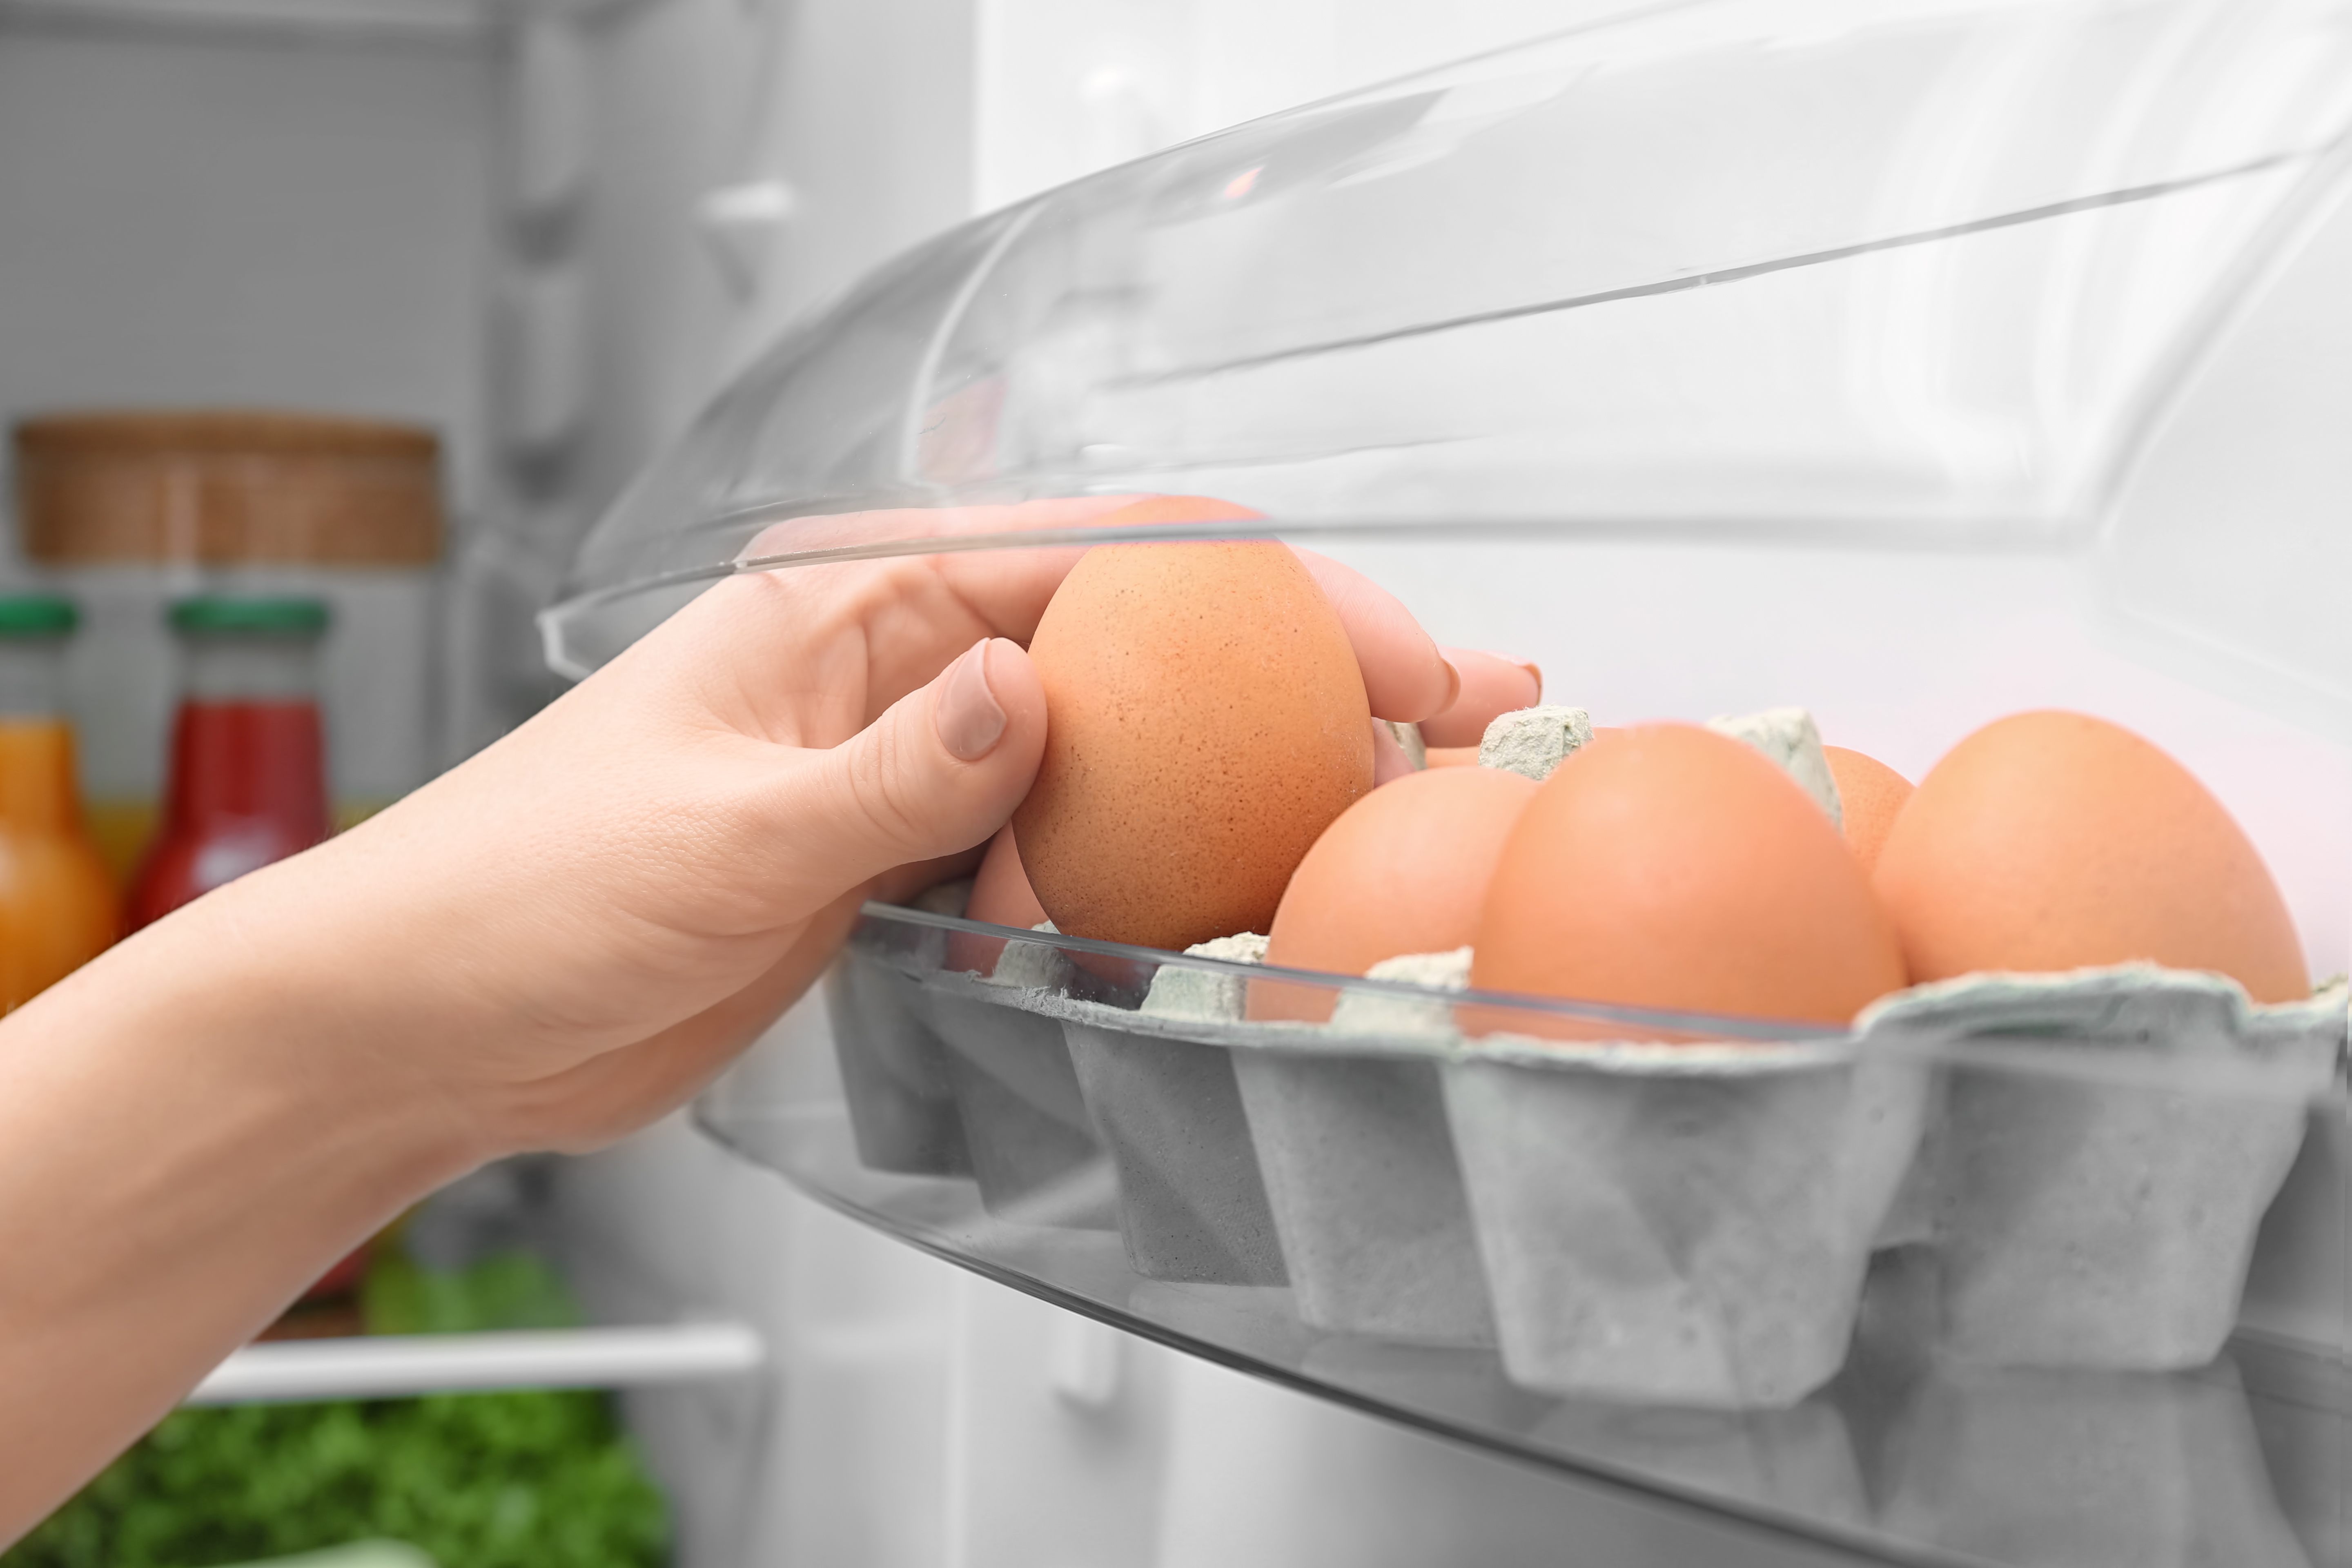 Donna prende un uova da un cartone nella porta del frigorifero; concept: uova, conservazione